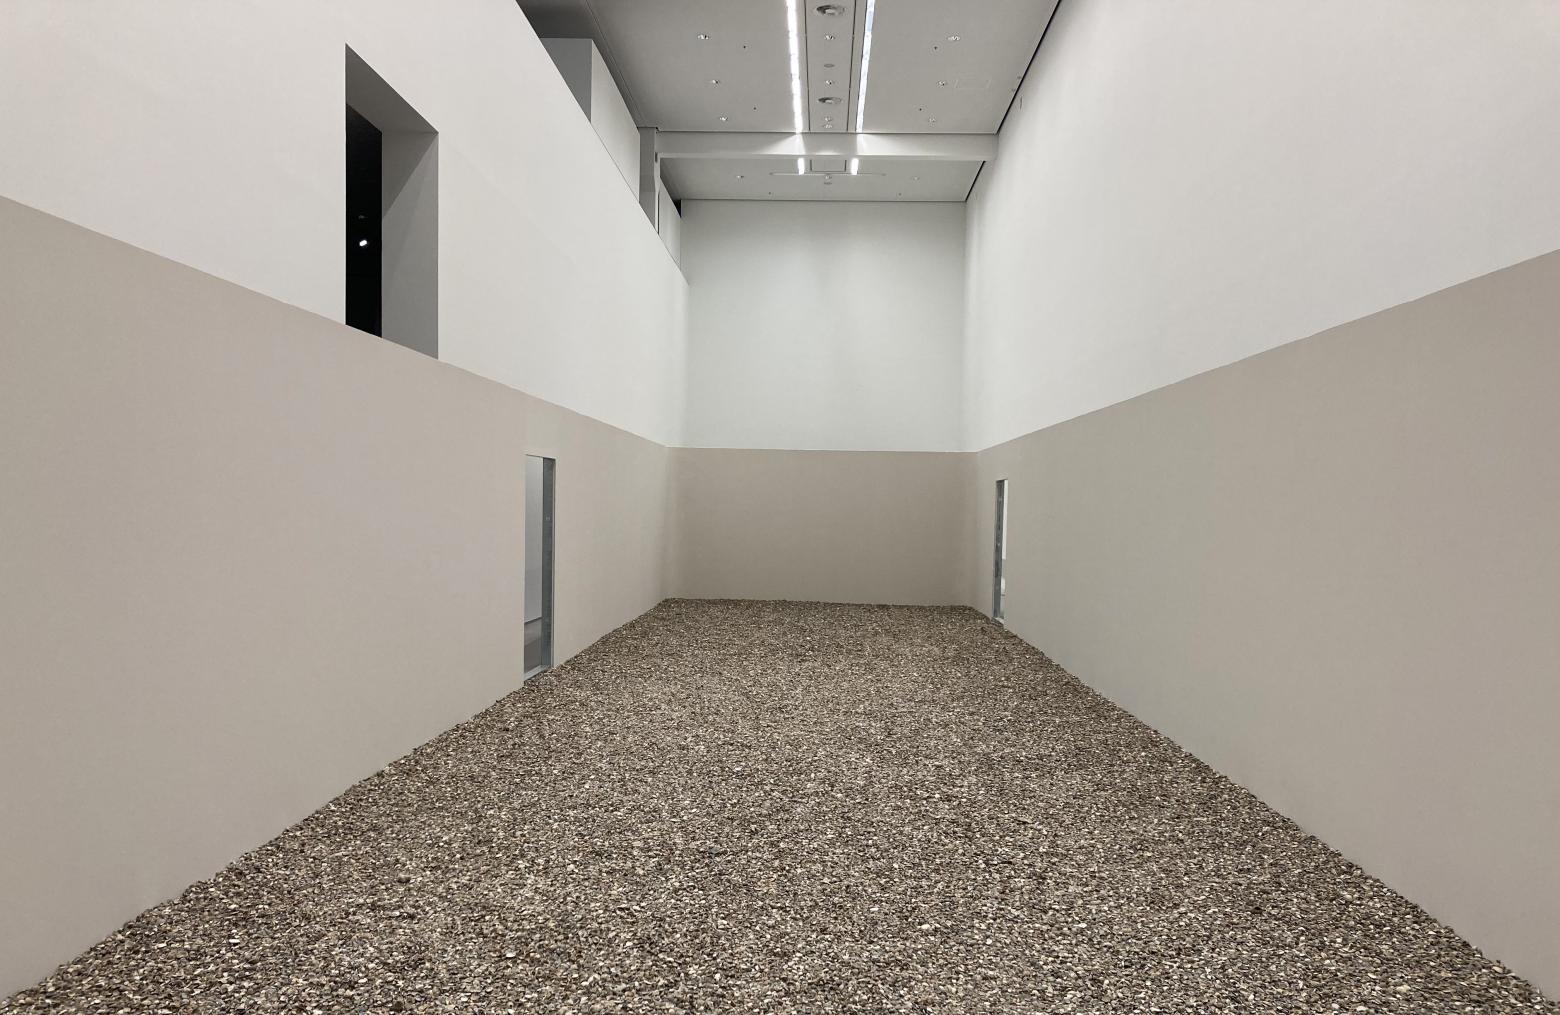 "Tectonic Tender" heißt die Ausstellung der schwedischen Bildhauerin und Installationskünstlerin Nina Canell in der Berlinischen Galerie